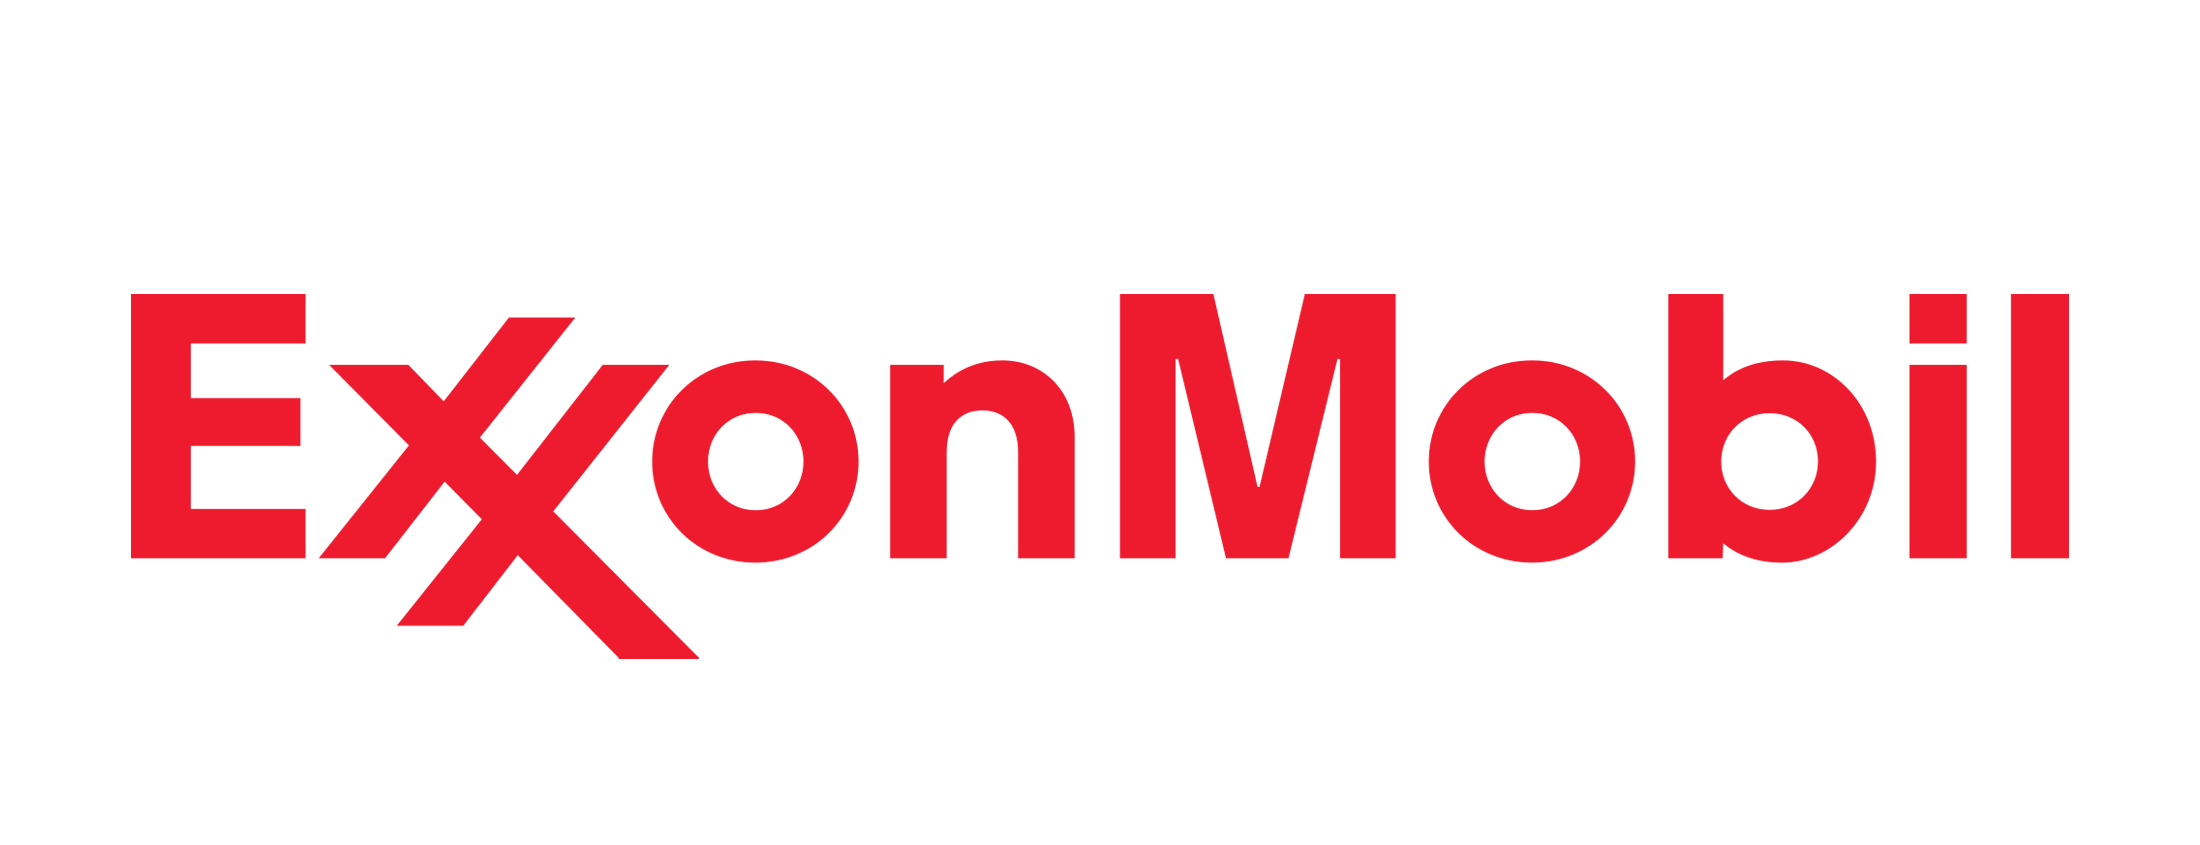 Exxon-logo